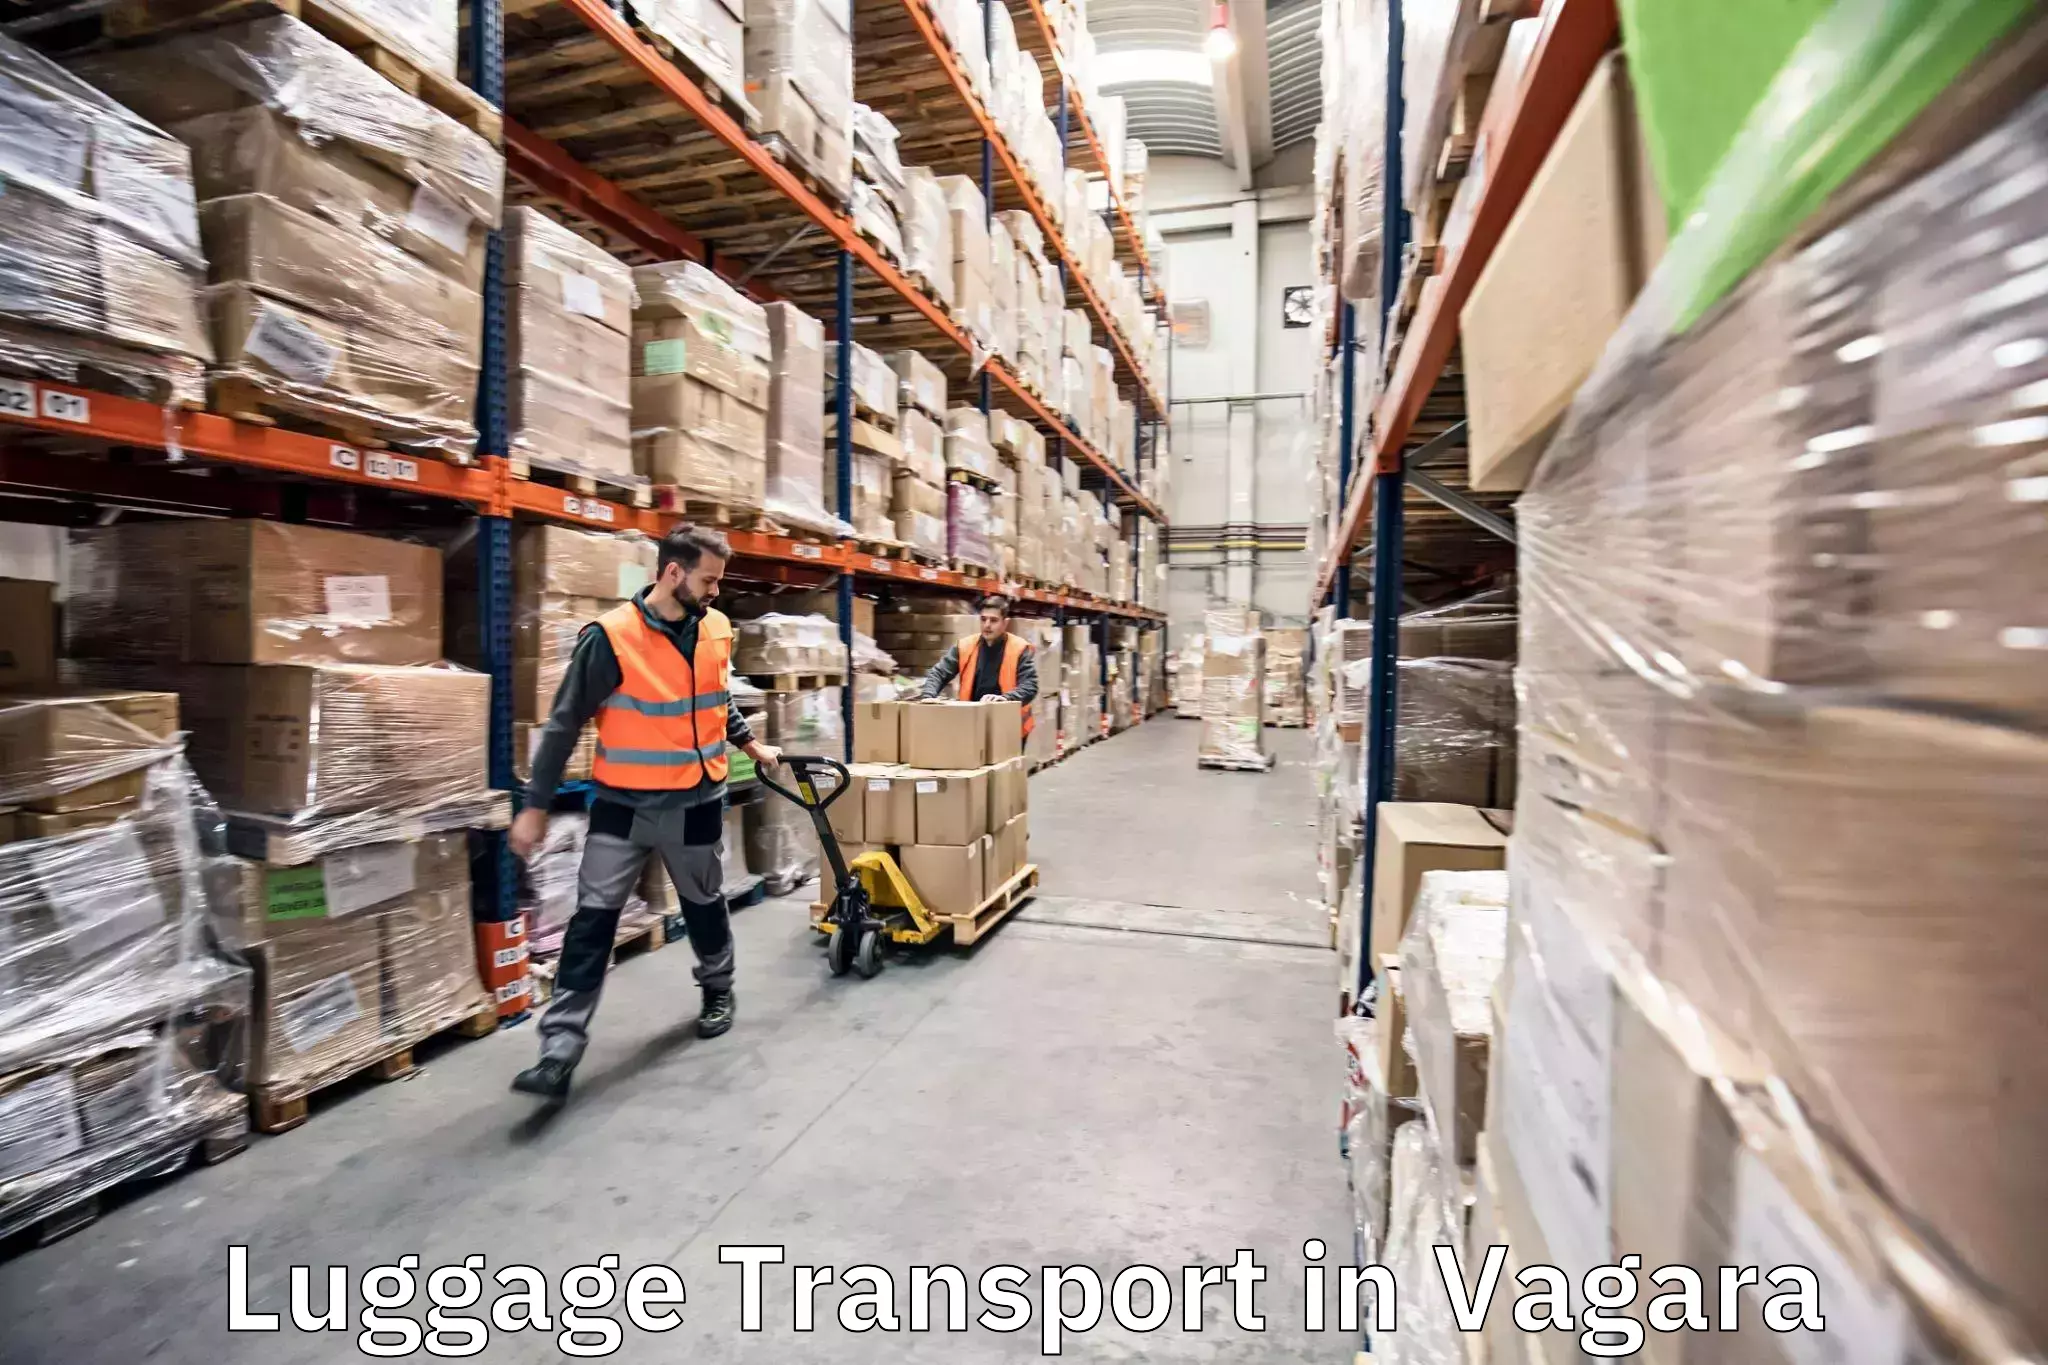 Luggage transport schedule in Vagara